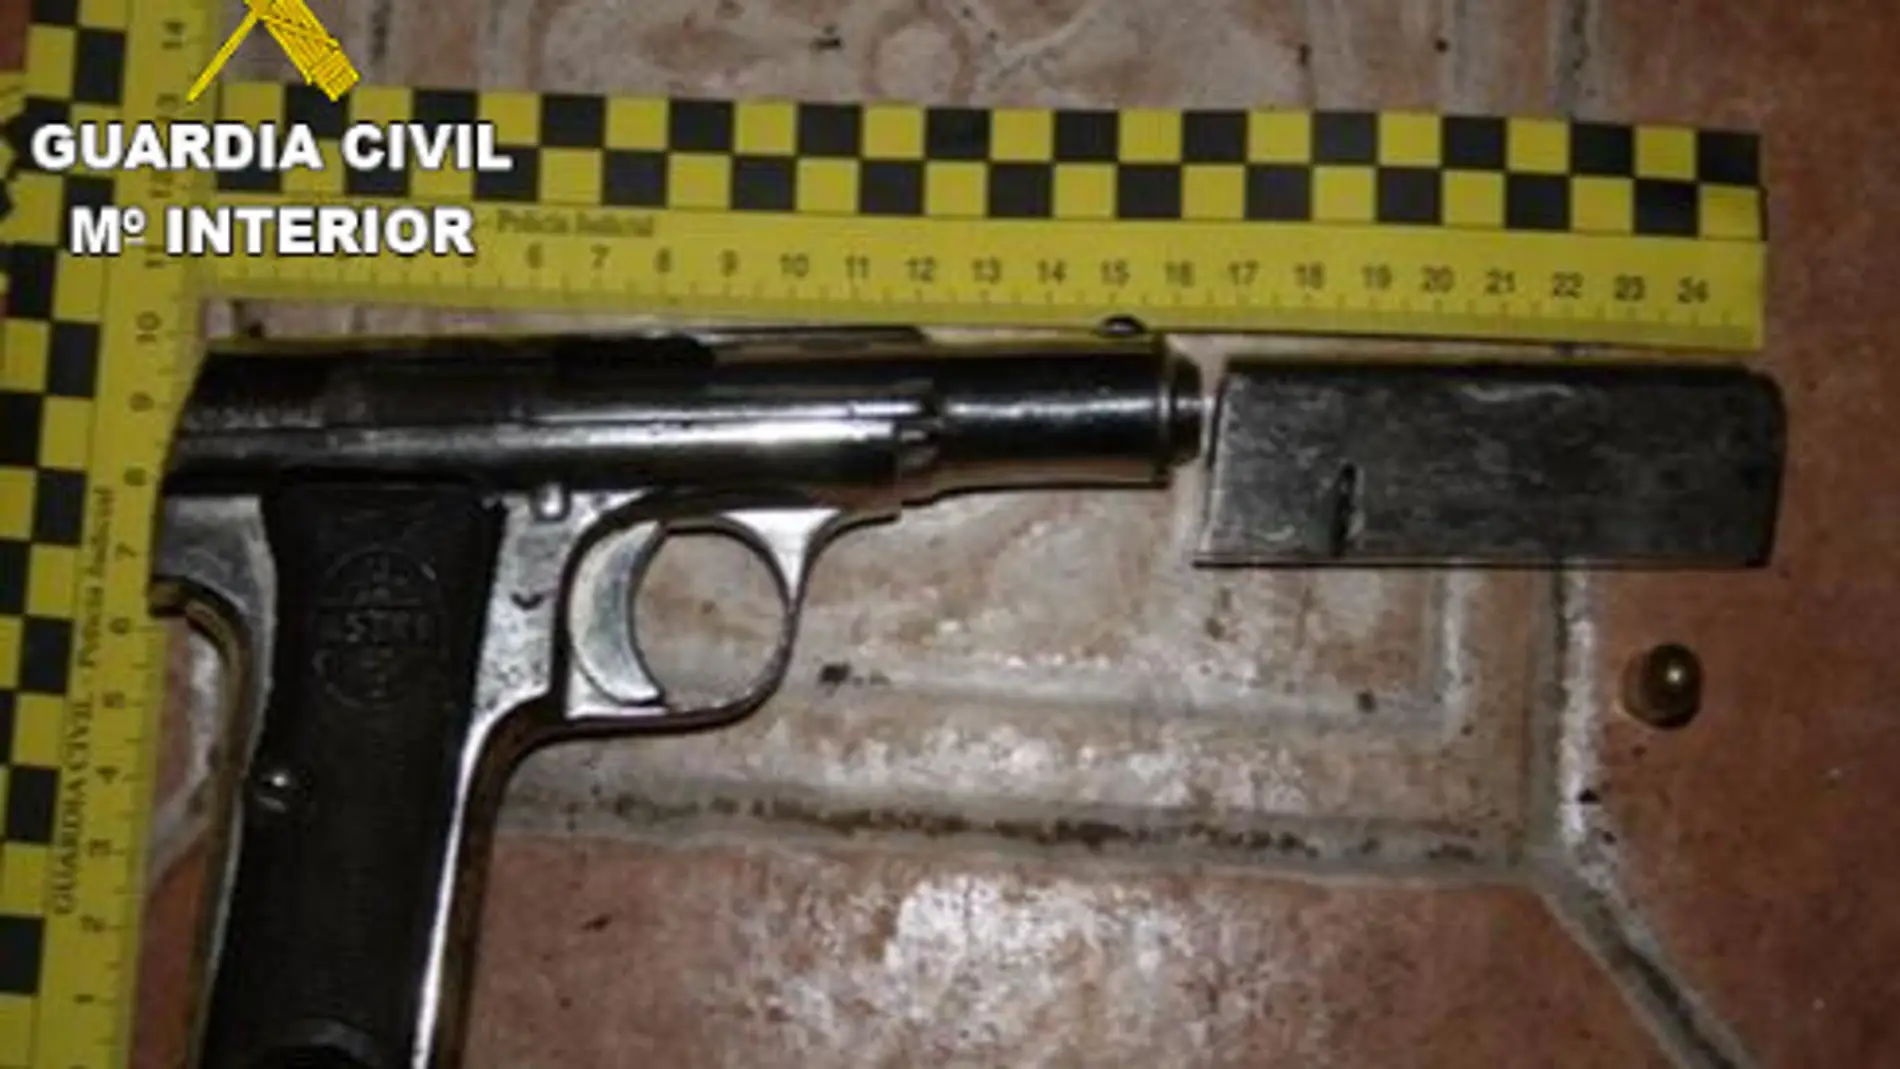 El arma recuperada por la Guardia Civil, lista para disparar